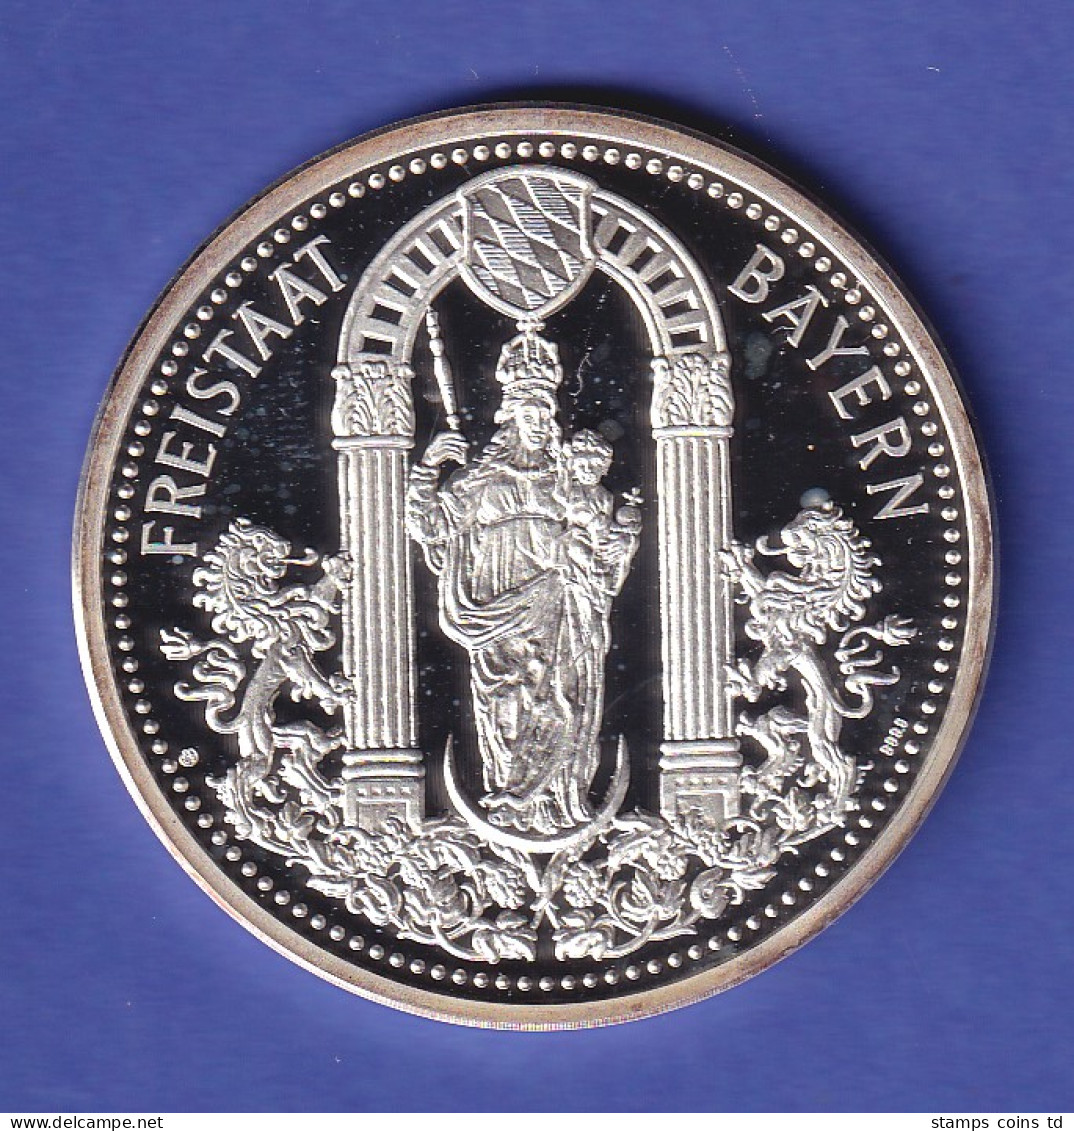 Silbermedaille 1995 Bayern-Medaille Kloster Ettal Mondsichelmadonna 50gAg999.9 - Unclassified